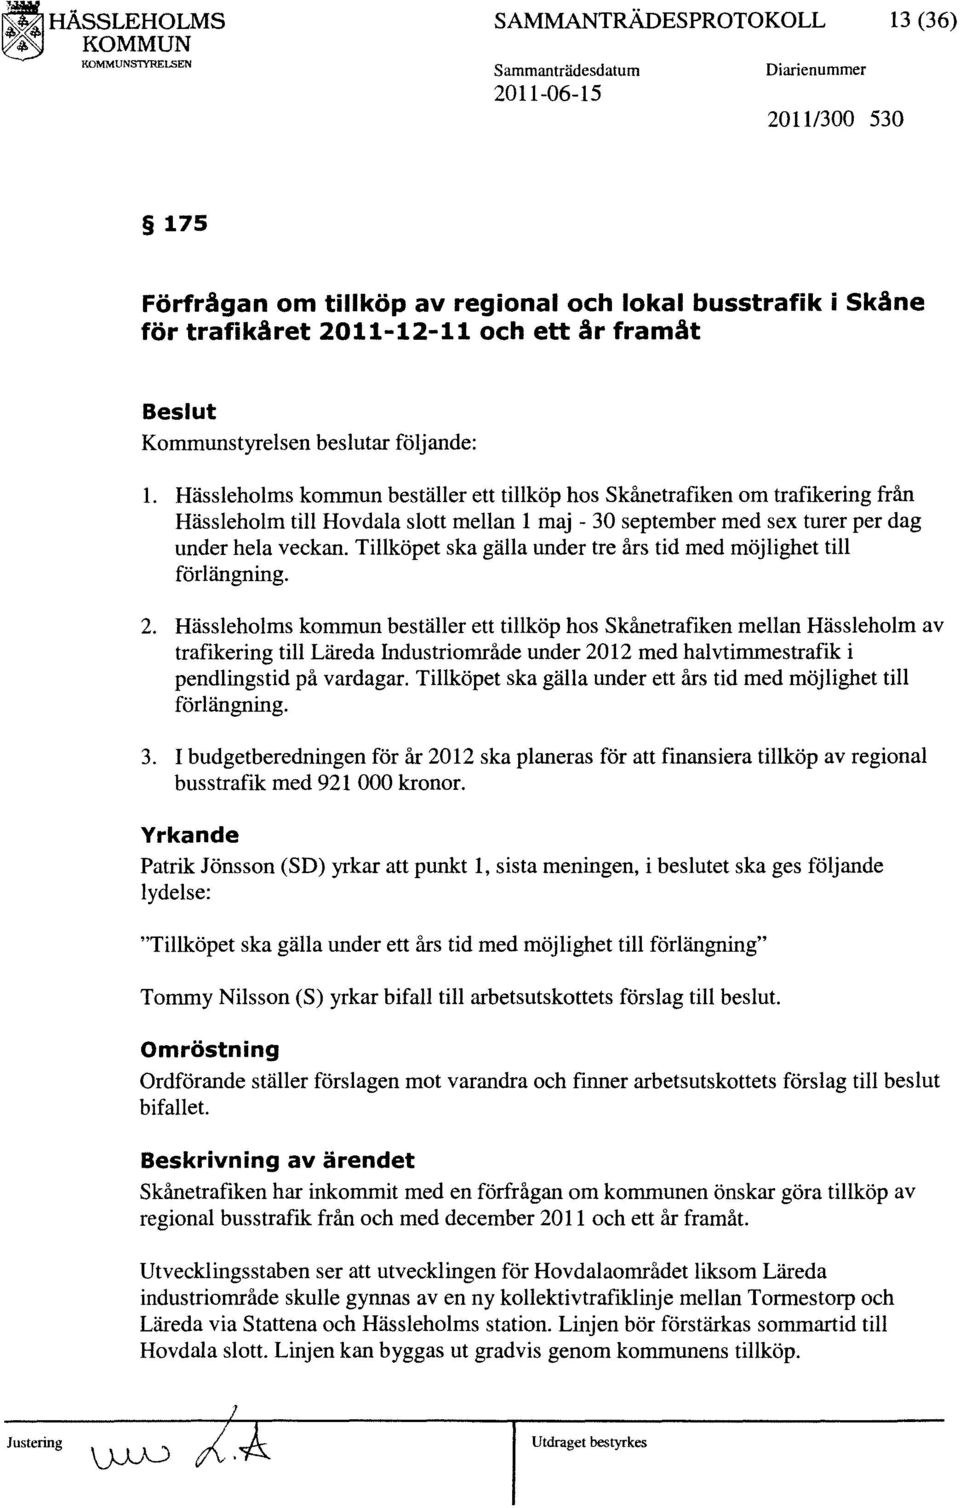 Hässleholms kommun beställer ett tillköp hos Skånetraflken om trafikering från Hässleholm till Hovdala slott mellan 1 maj - 30 september med sex turer per dag under hela veckan.